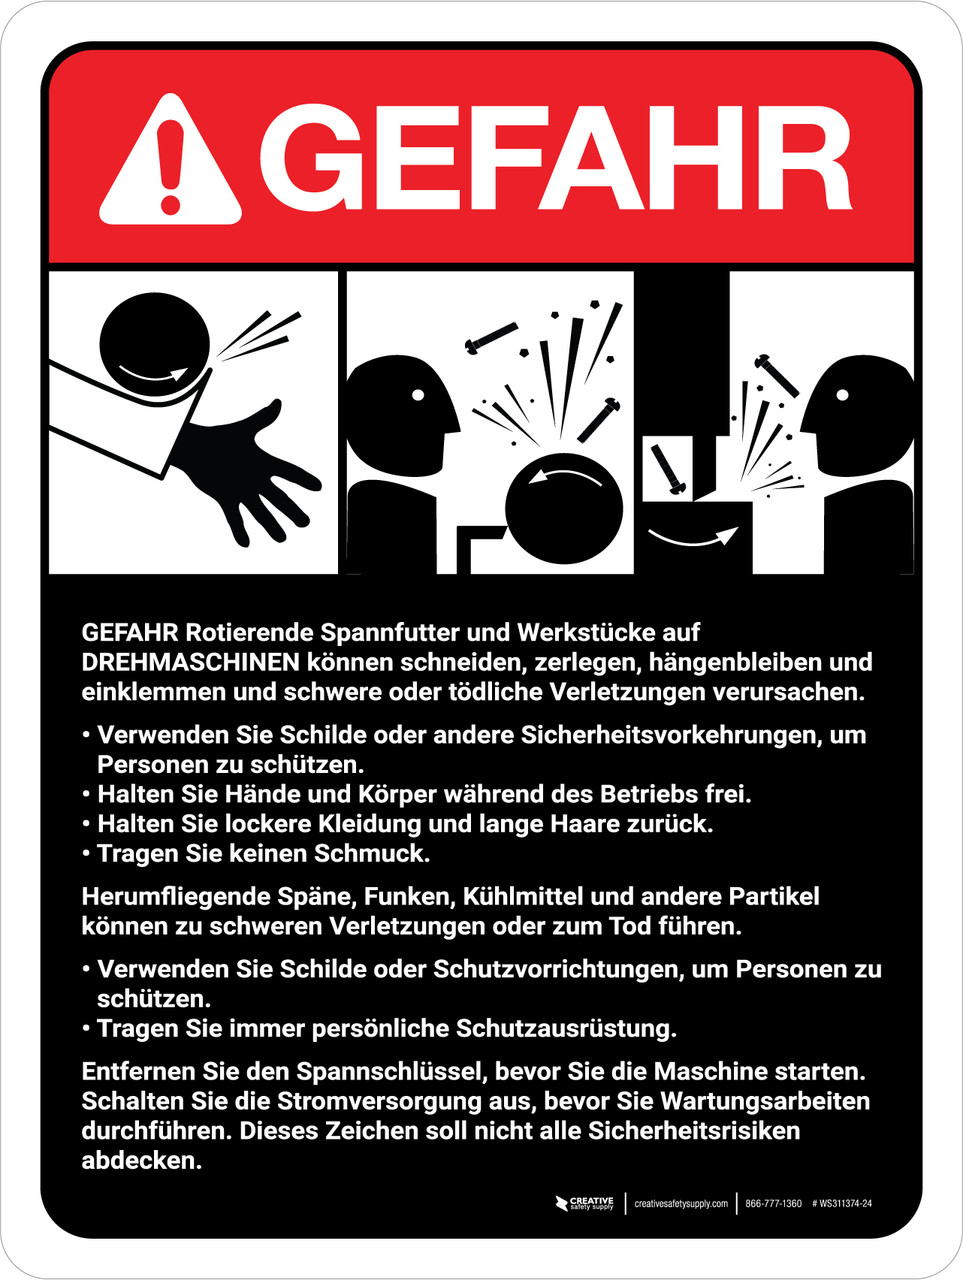 Gefahr - Richtlinien für Drehmaschinen (Danger - Lathe Machine Guidelines) ANSI German - Wall Sign WS311374